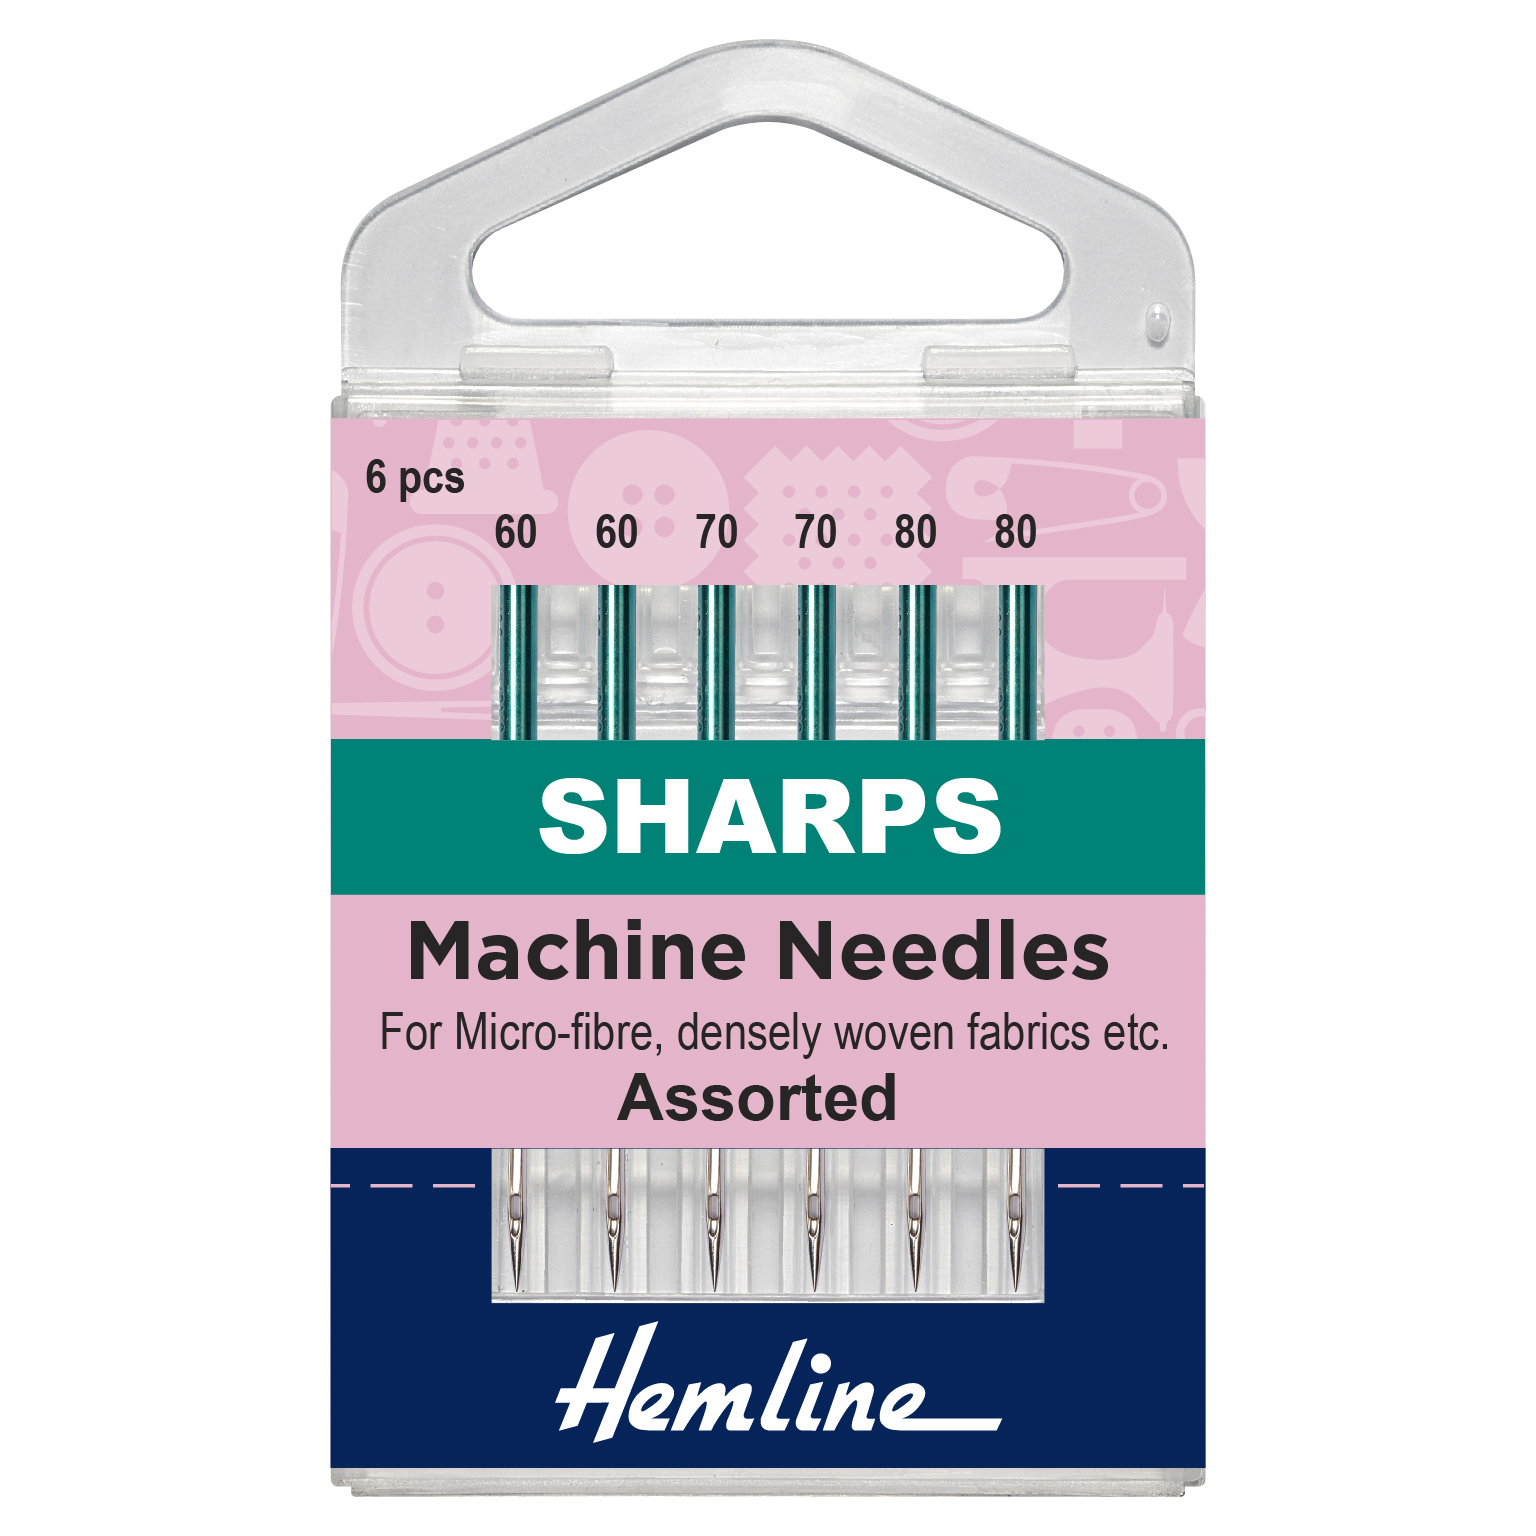 Assorted Sharps Machine Needles